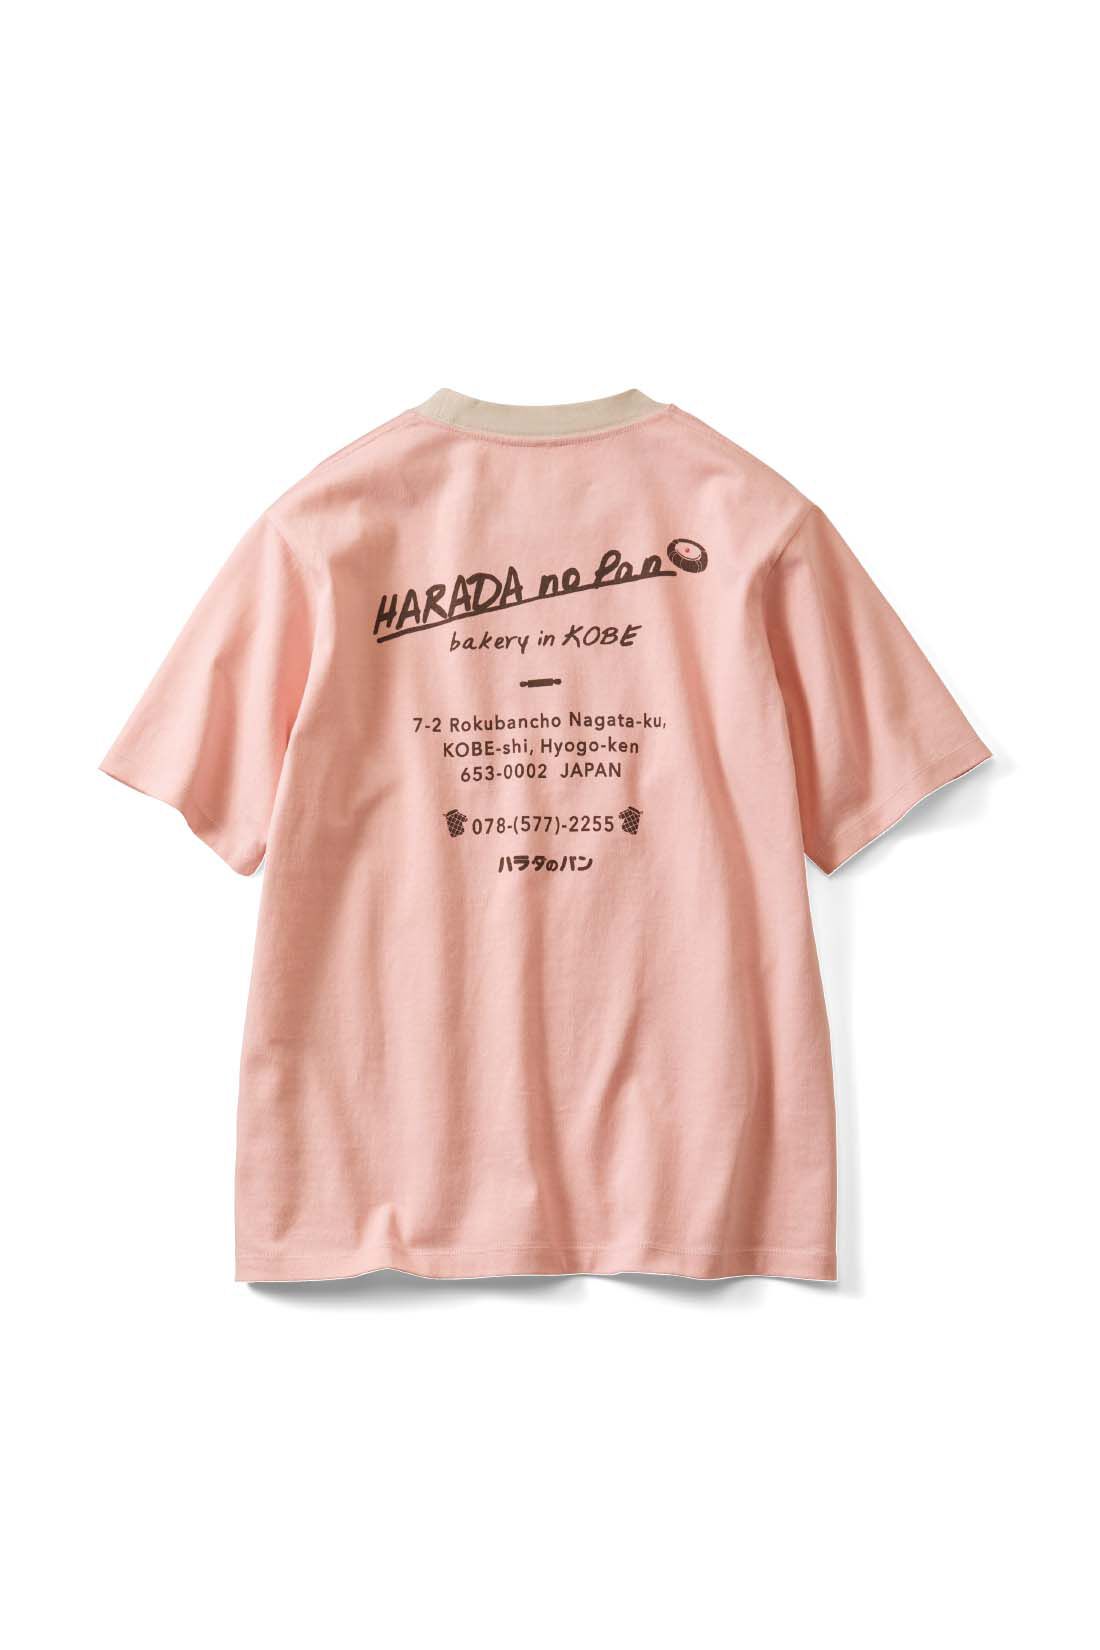 Live in  comfort|Live love cottonプロジェクト リブ イン コンフォート神戸のベーカリーハラダのパンさんとつくったオーガニックコットンのレトロかわいいTシャツ〈ベビーピンク〉|back